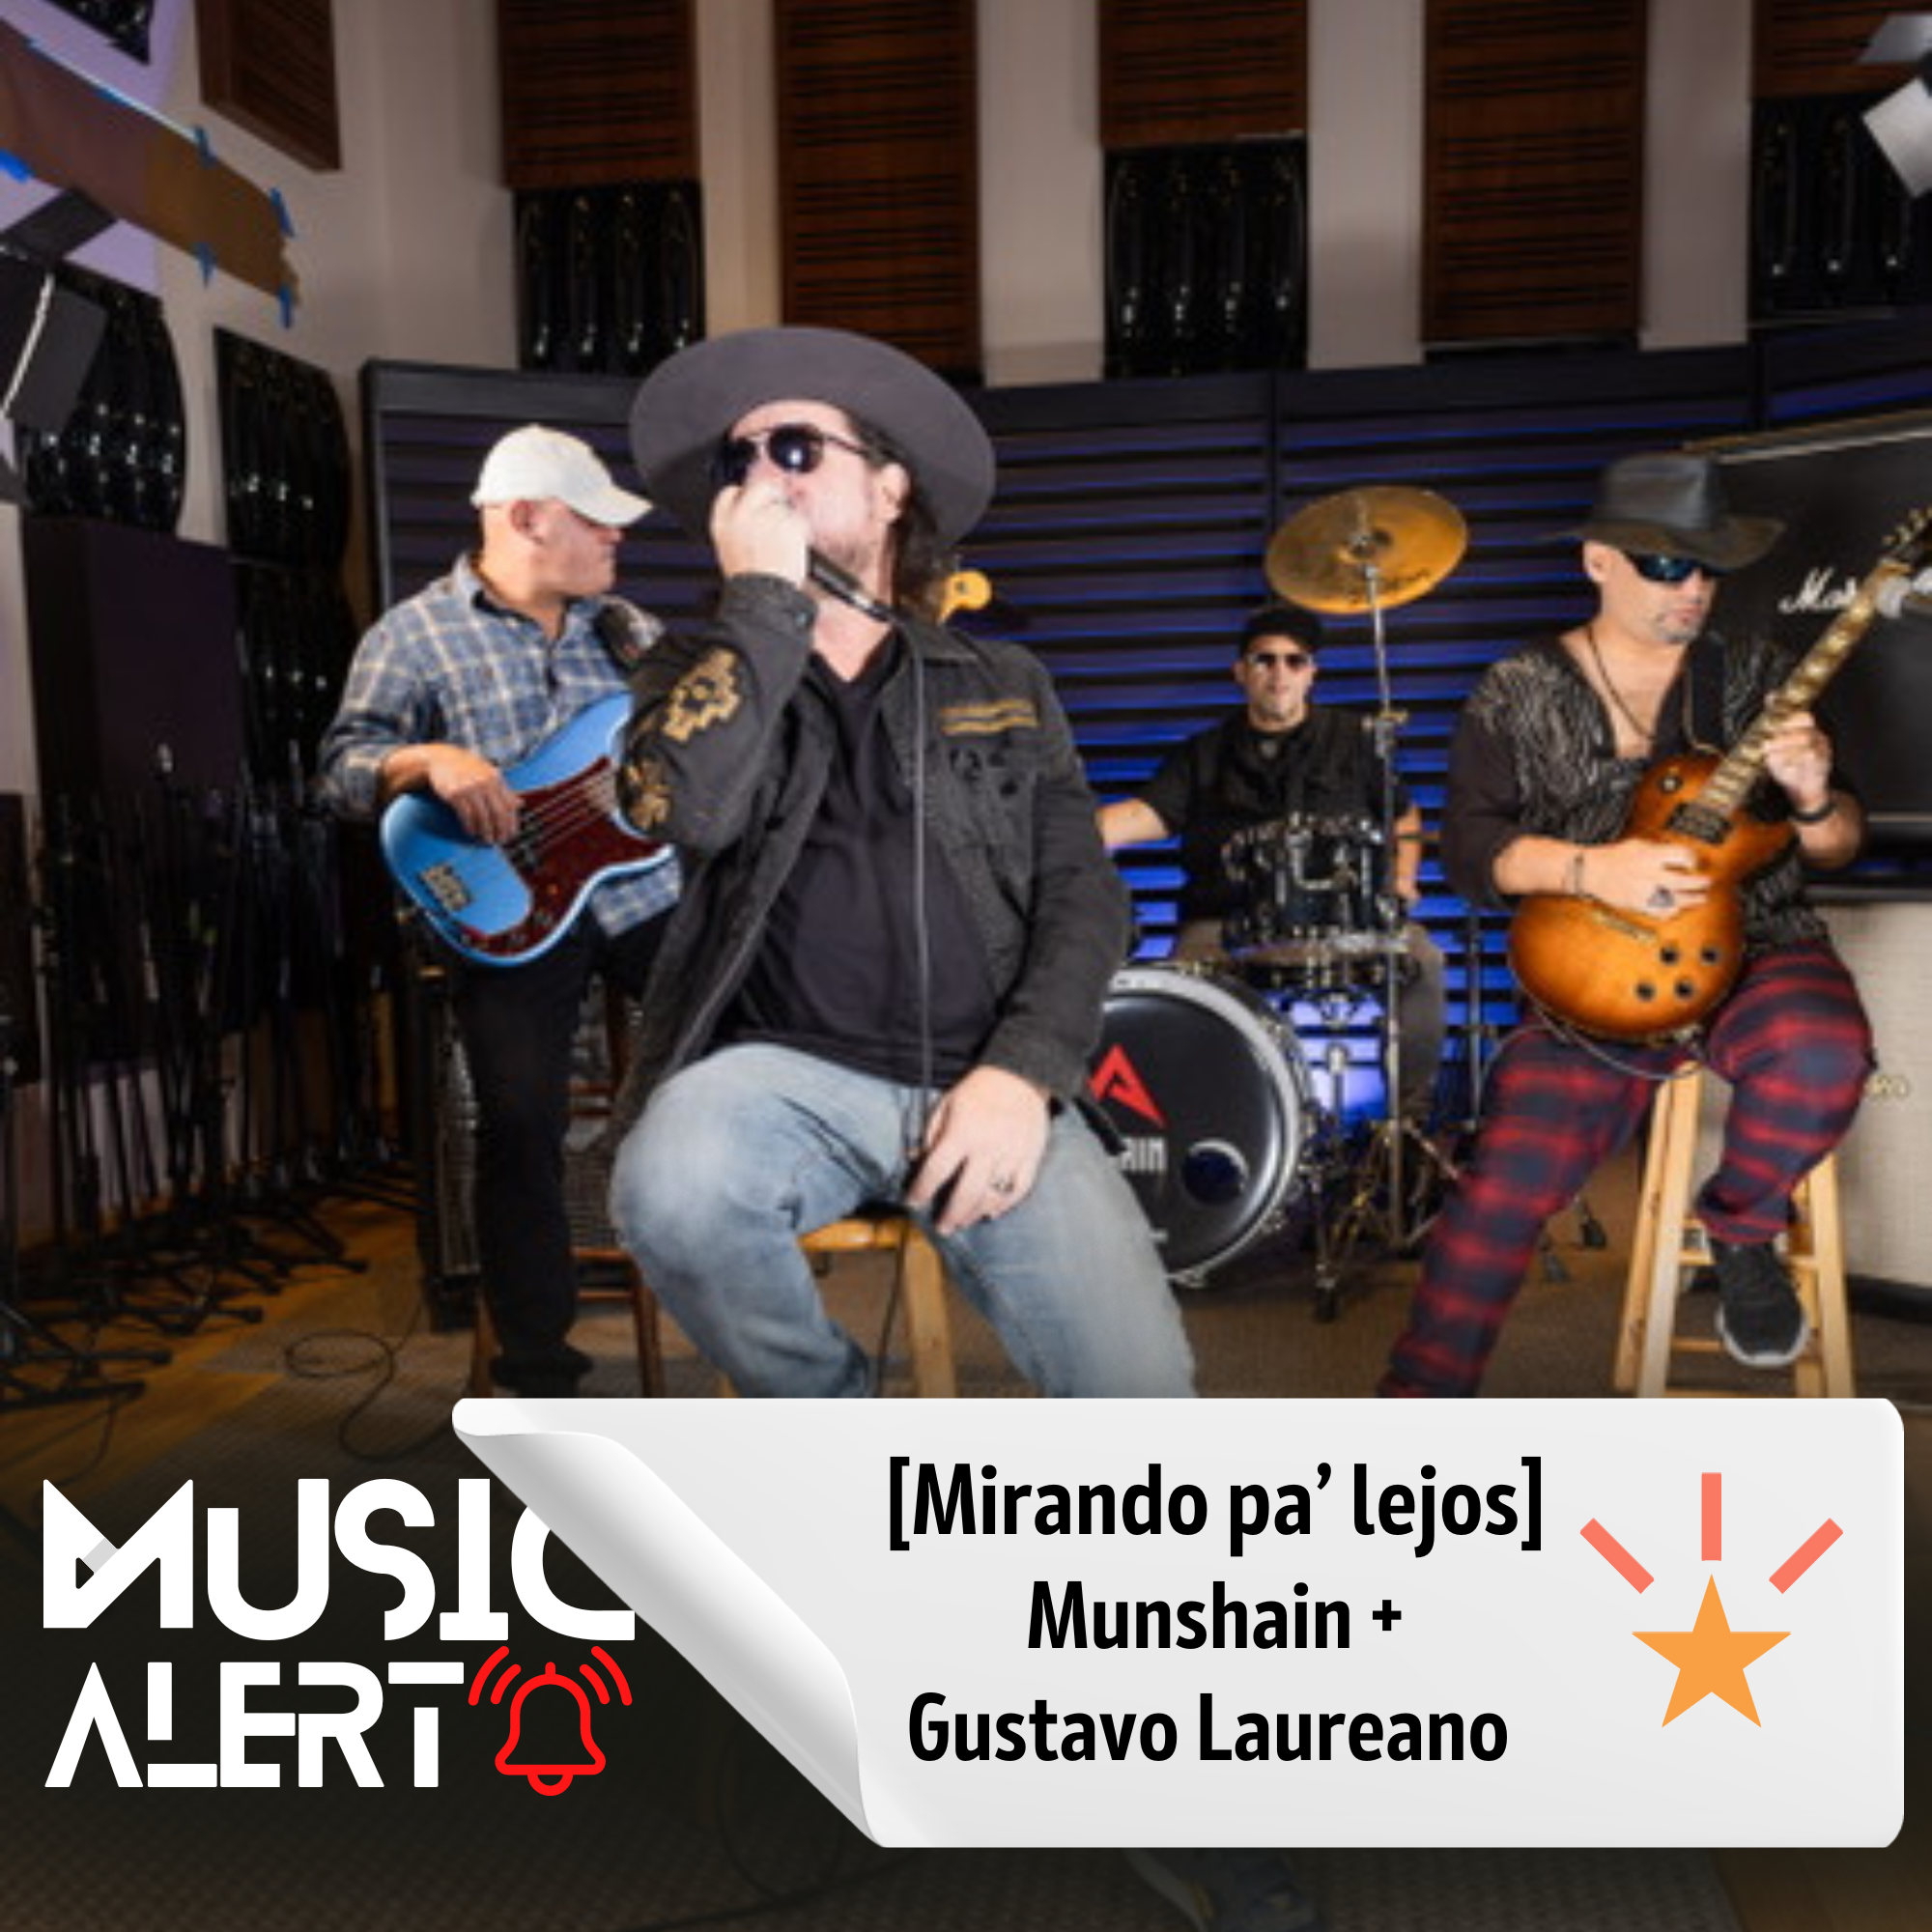 [MUSIC ALERT] MUNSHAIN + GUSTAVO LAUREANO